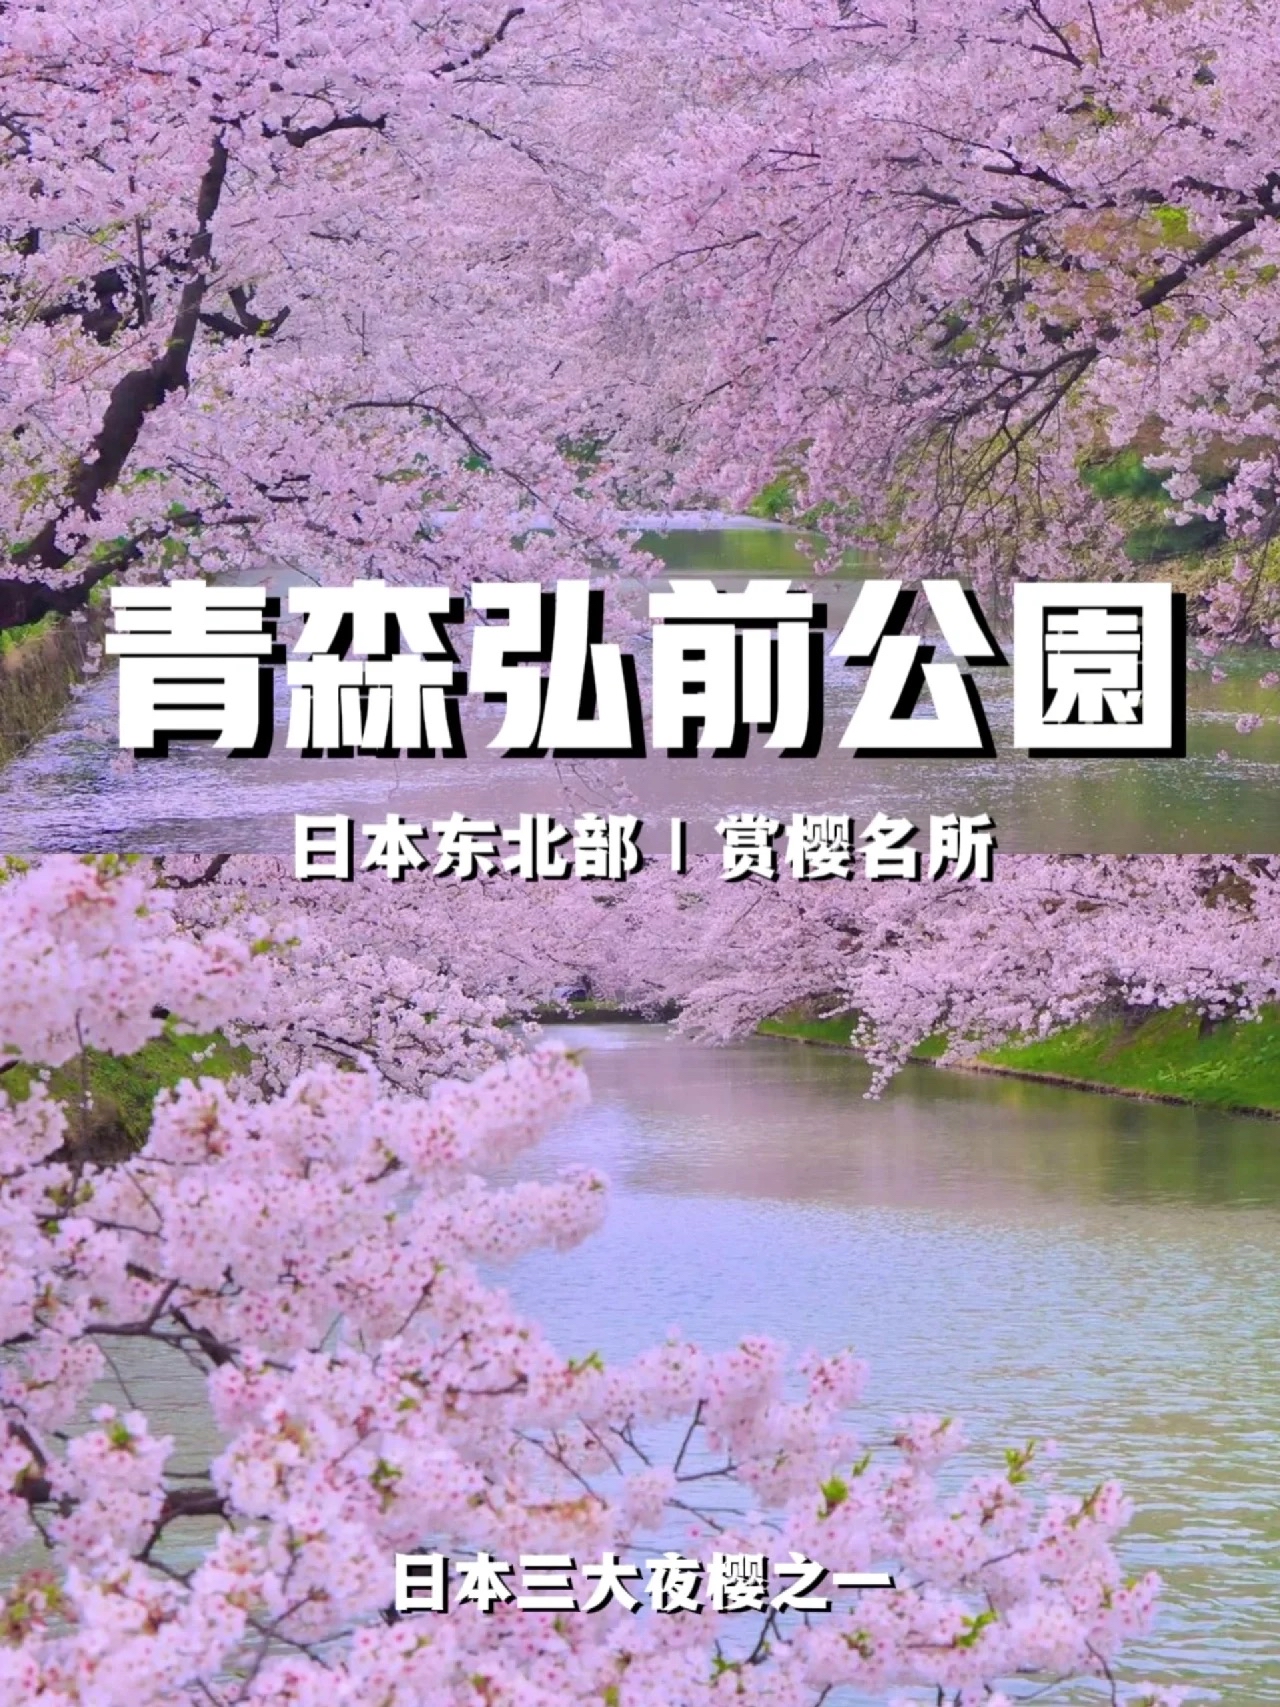 青森弘前公园|东北部赏樱名所  日本的赏樱名所可以说是数不胜数，但青森县弘前市的弘前公园绝对是其中大